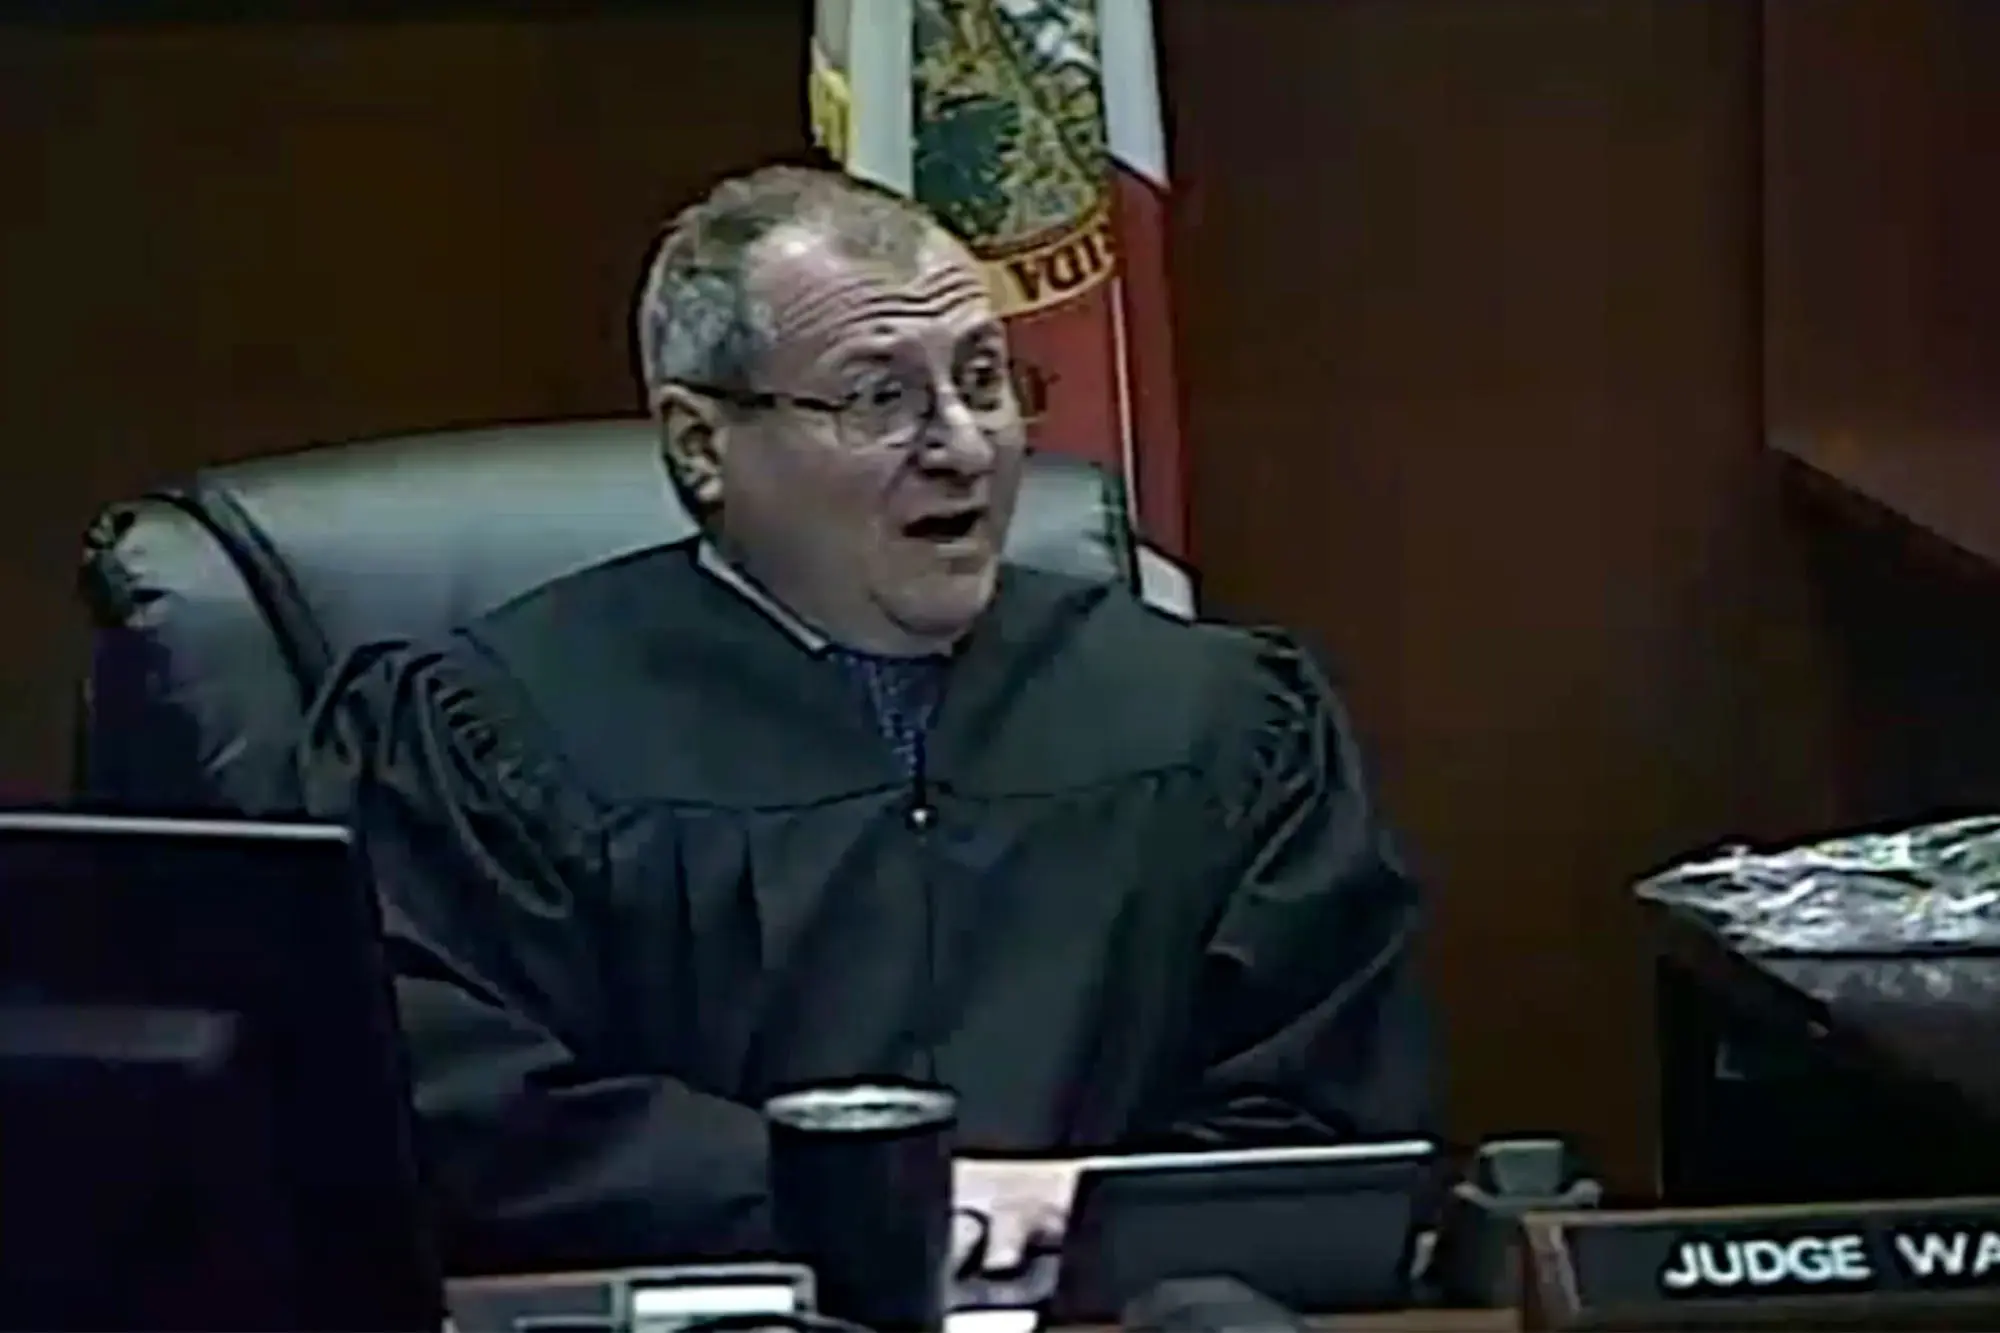 Judge William Culver